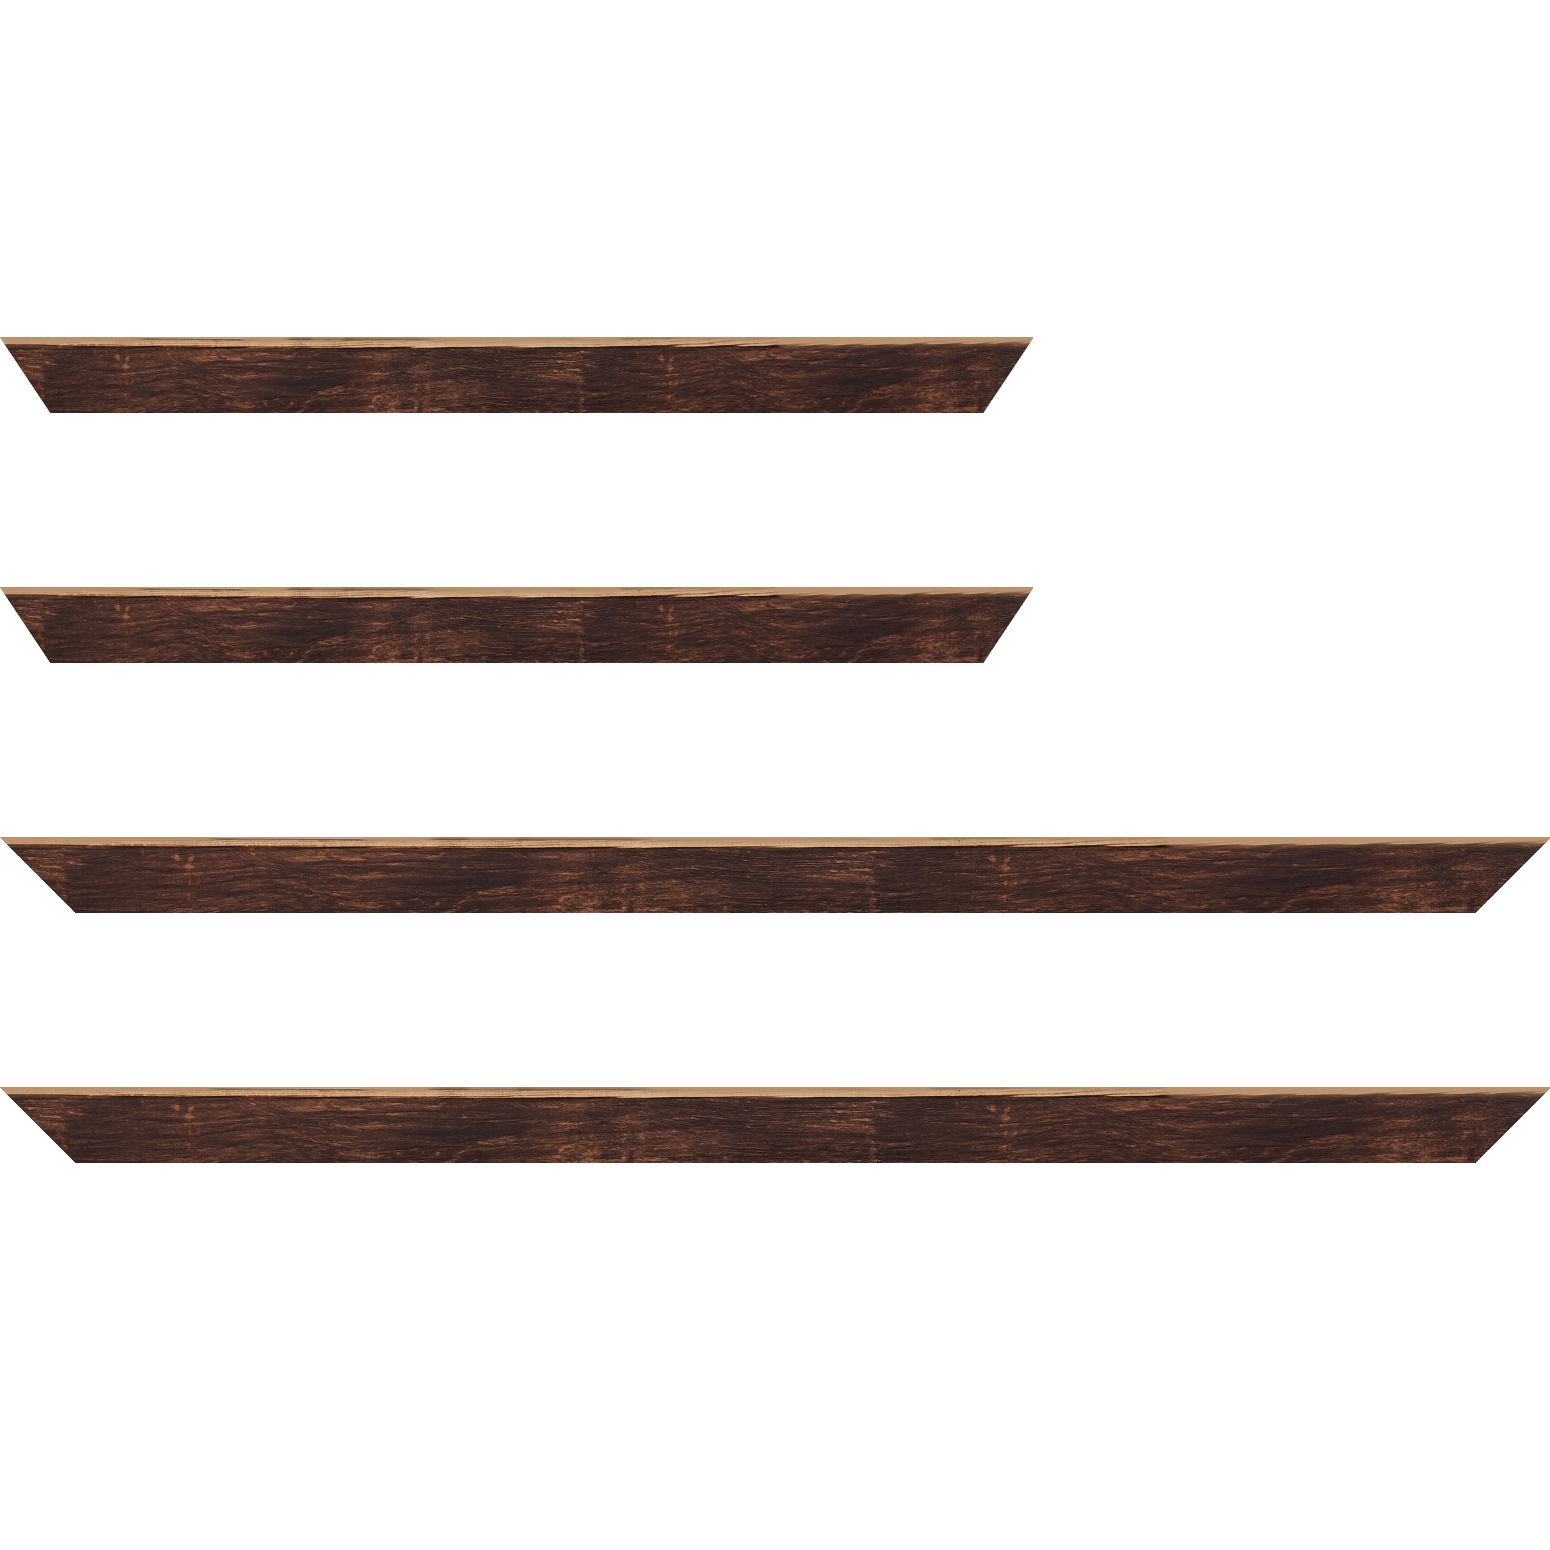 Baguette service précoupé bois profil arrondi en pente plongeant largeur 2.4cm couleur marron effet ressuyé, angle du cadre extérieur filet naturel